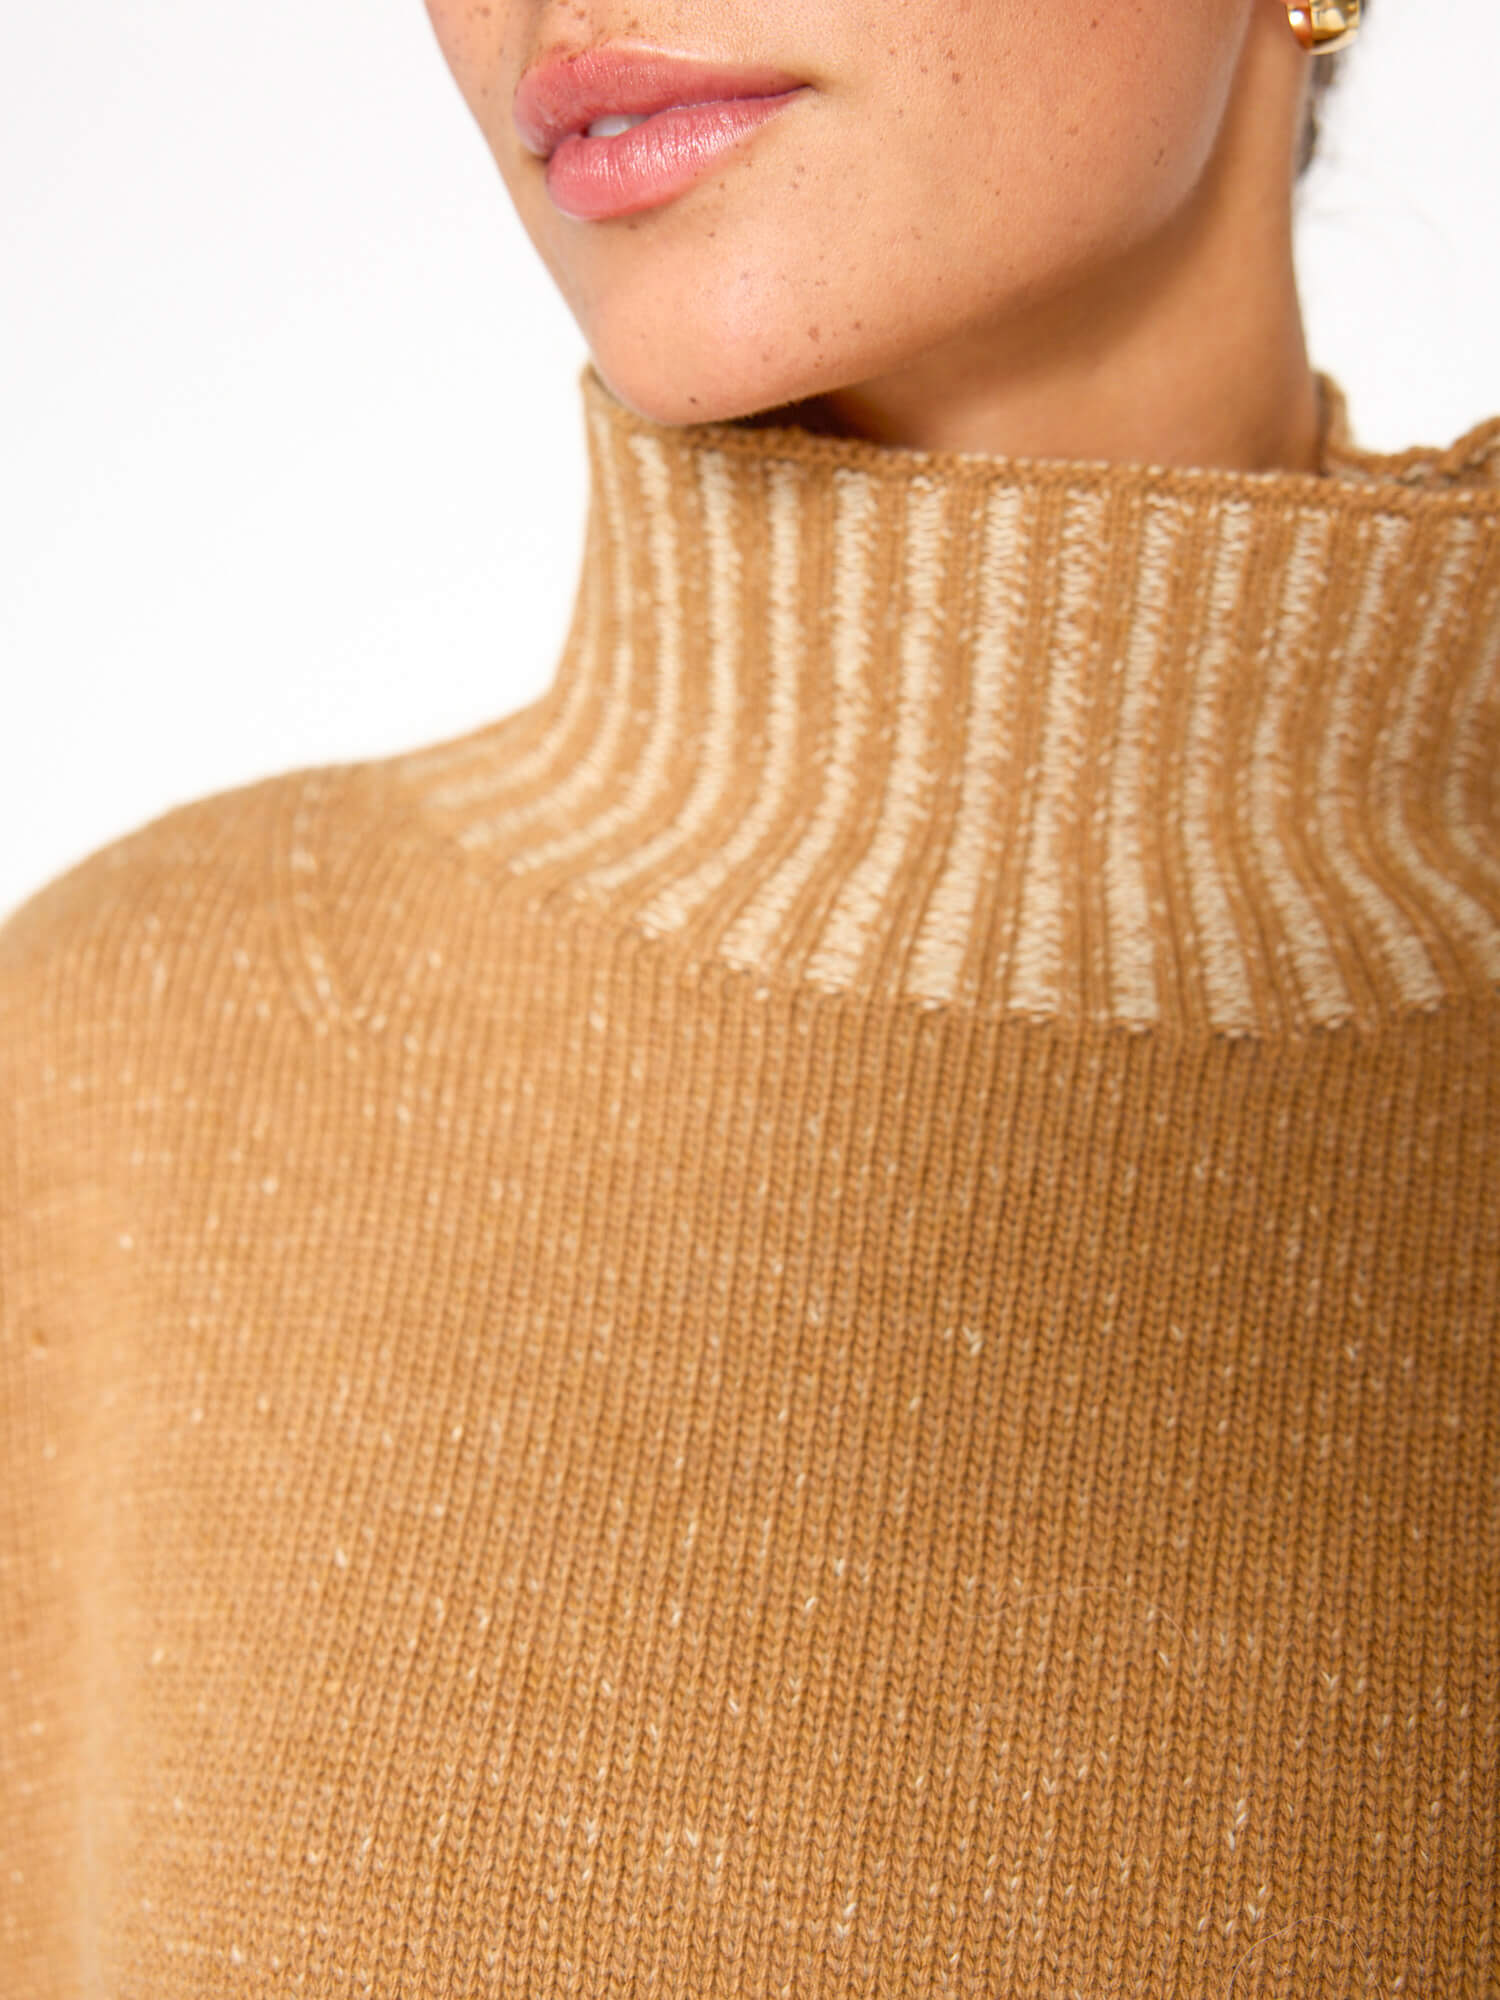 Ana tan turtleneck sweater close up